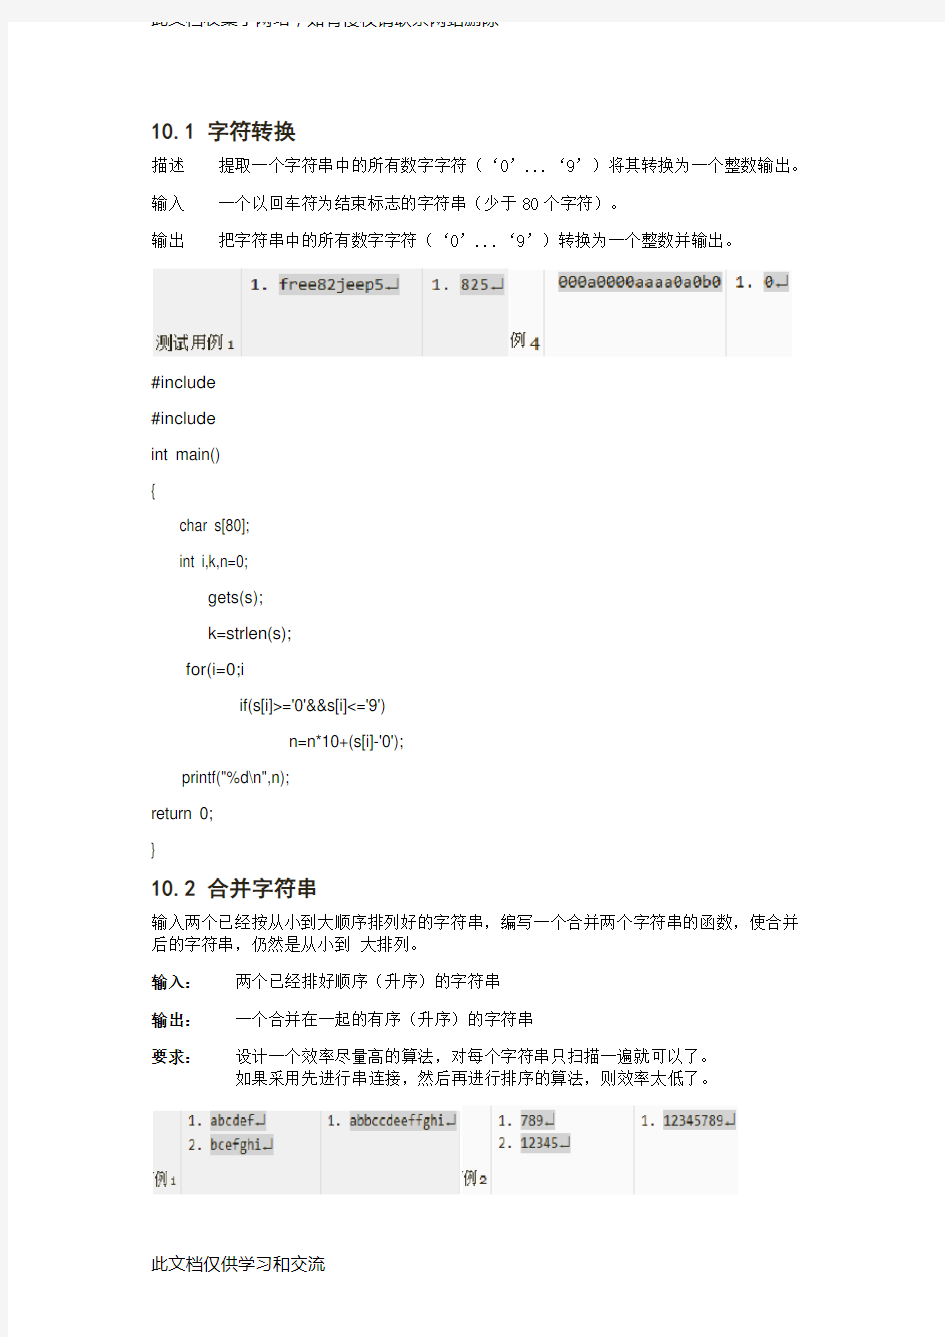 中国石油大学(华东)c语言在线测评答案 第10章字符串(级亲测正确)doc资料